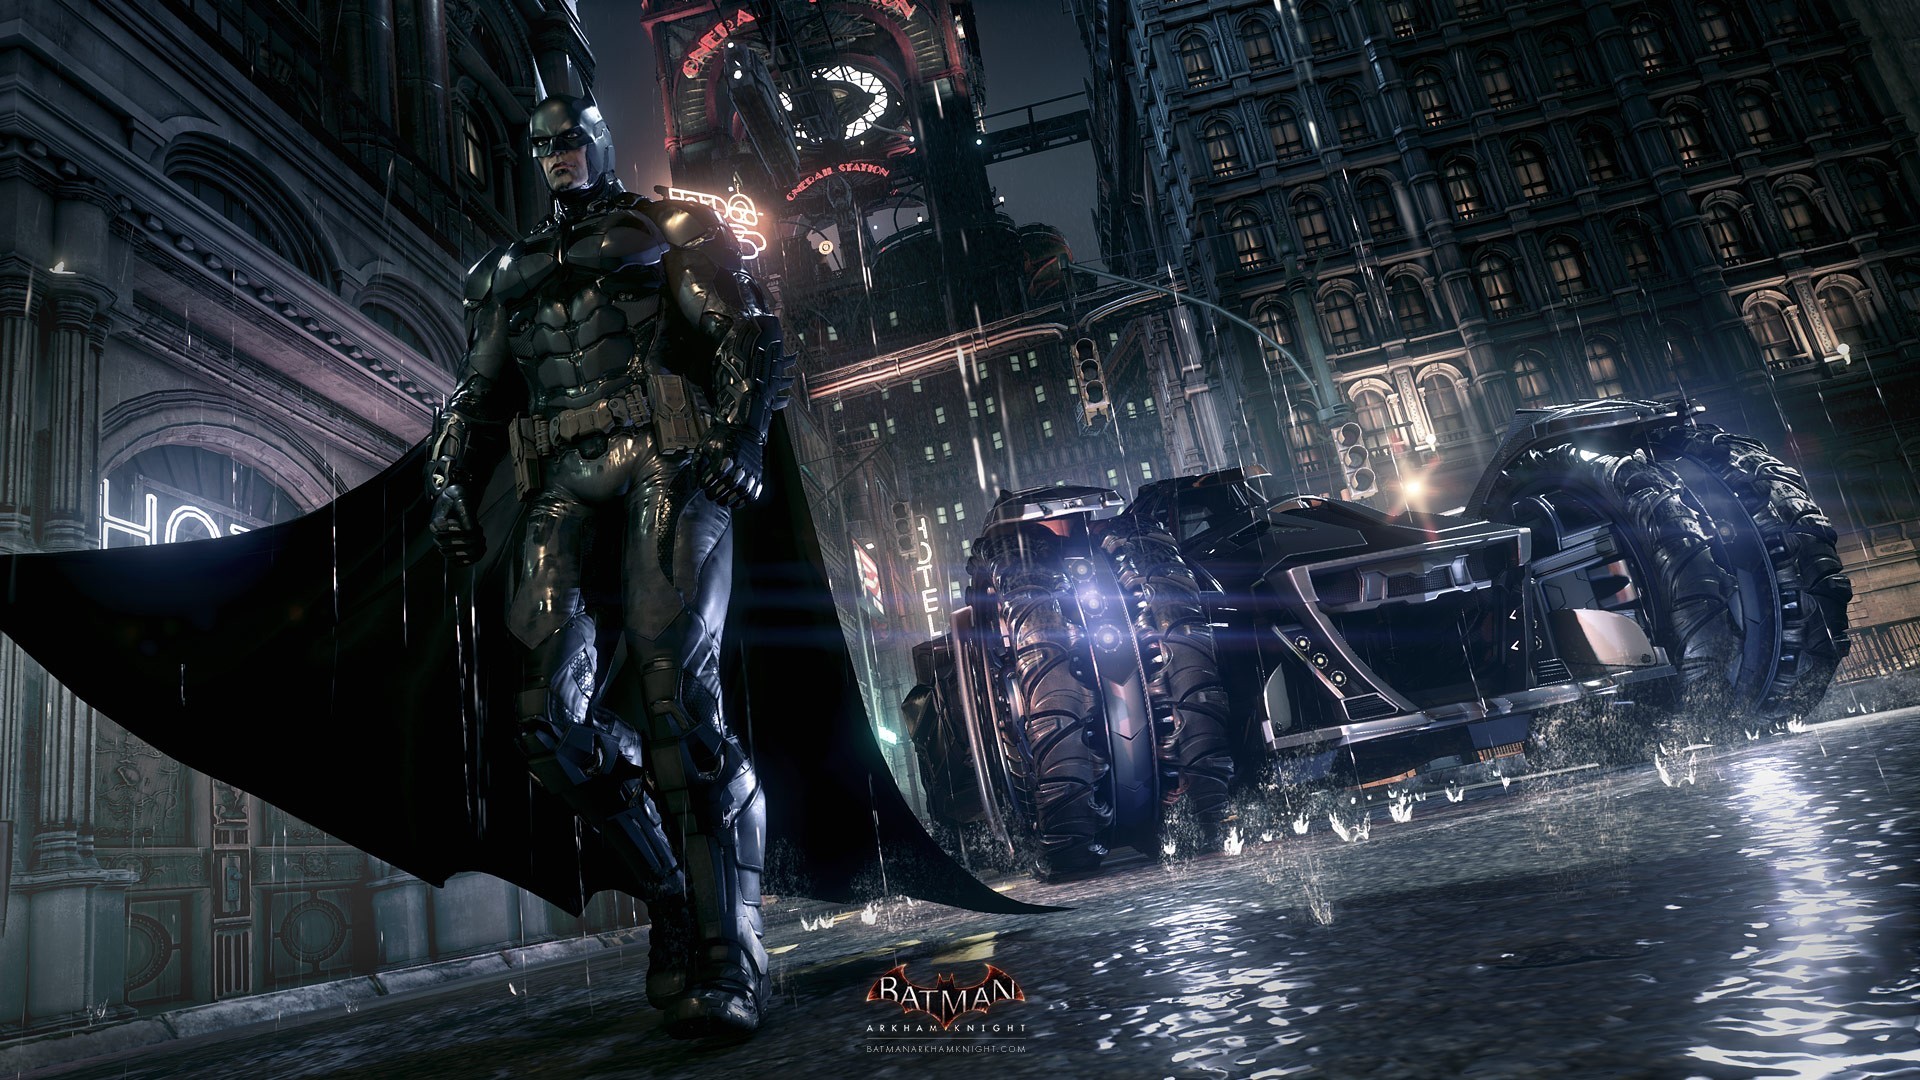 1920x1080 Batman: Arkham Knight HD Wallpaper | Hintergrund |  | ID:510745 -  Wallpaper Abyss